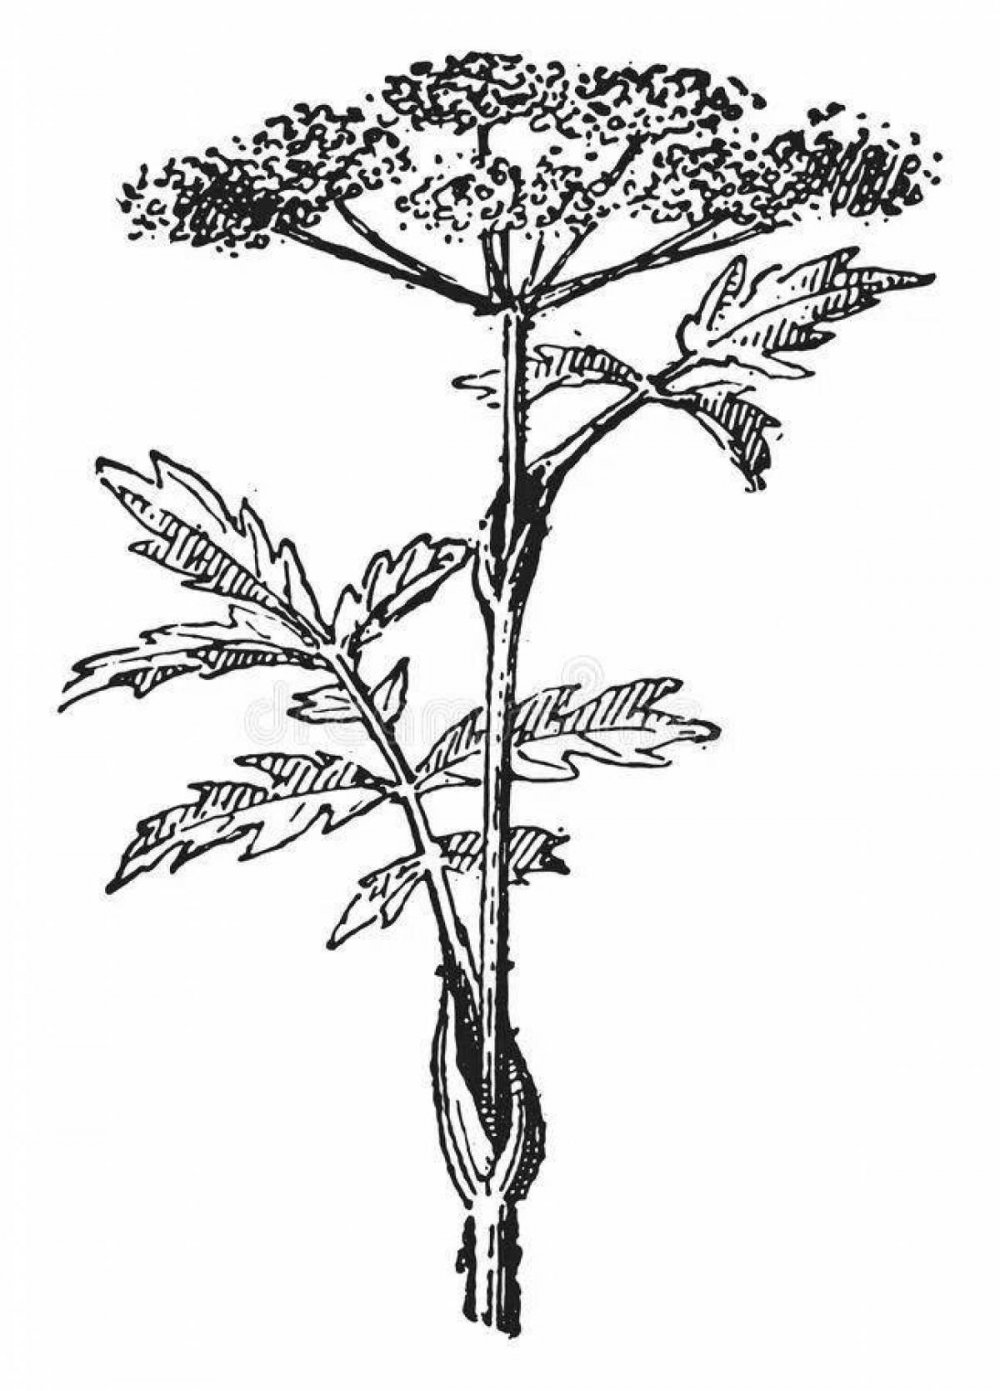 Heracleum freynianum